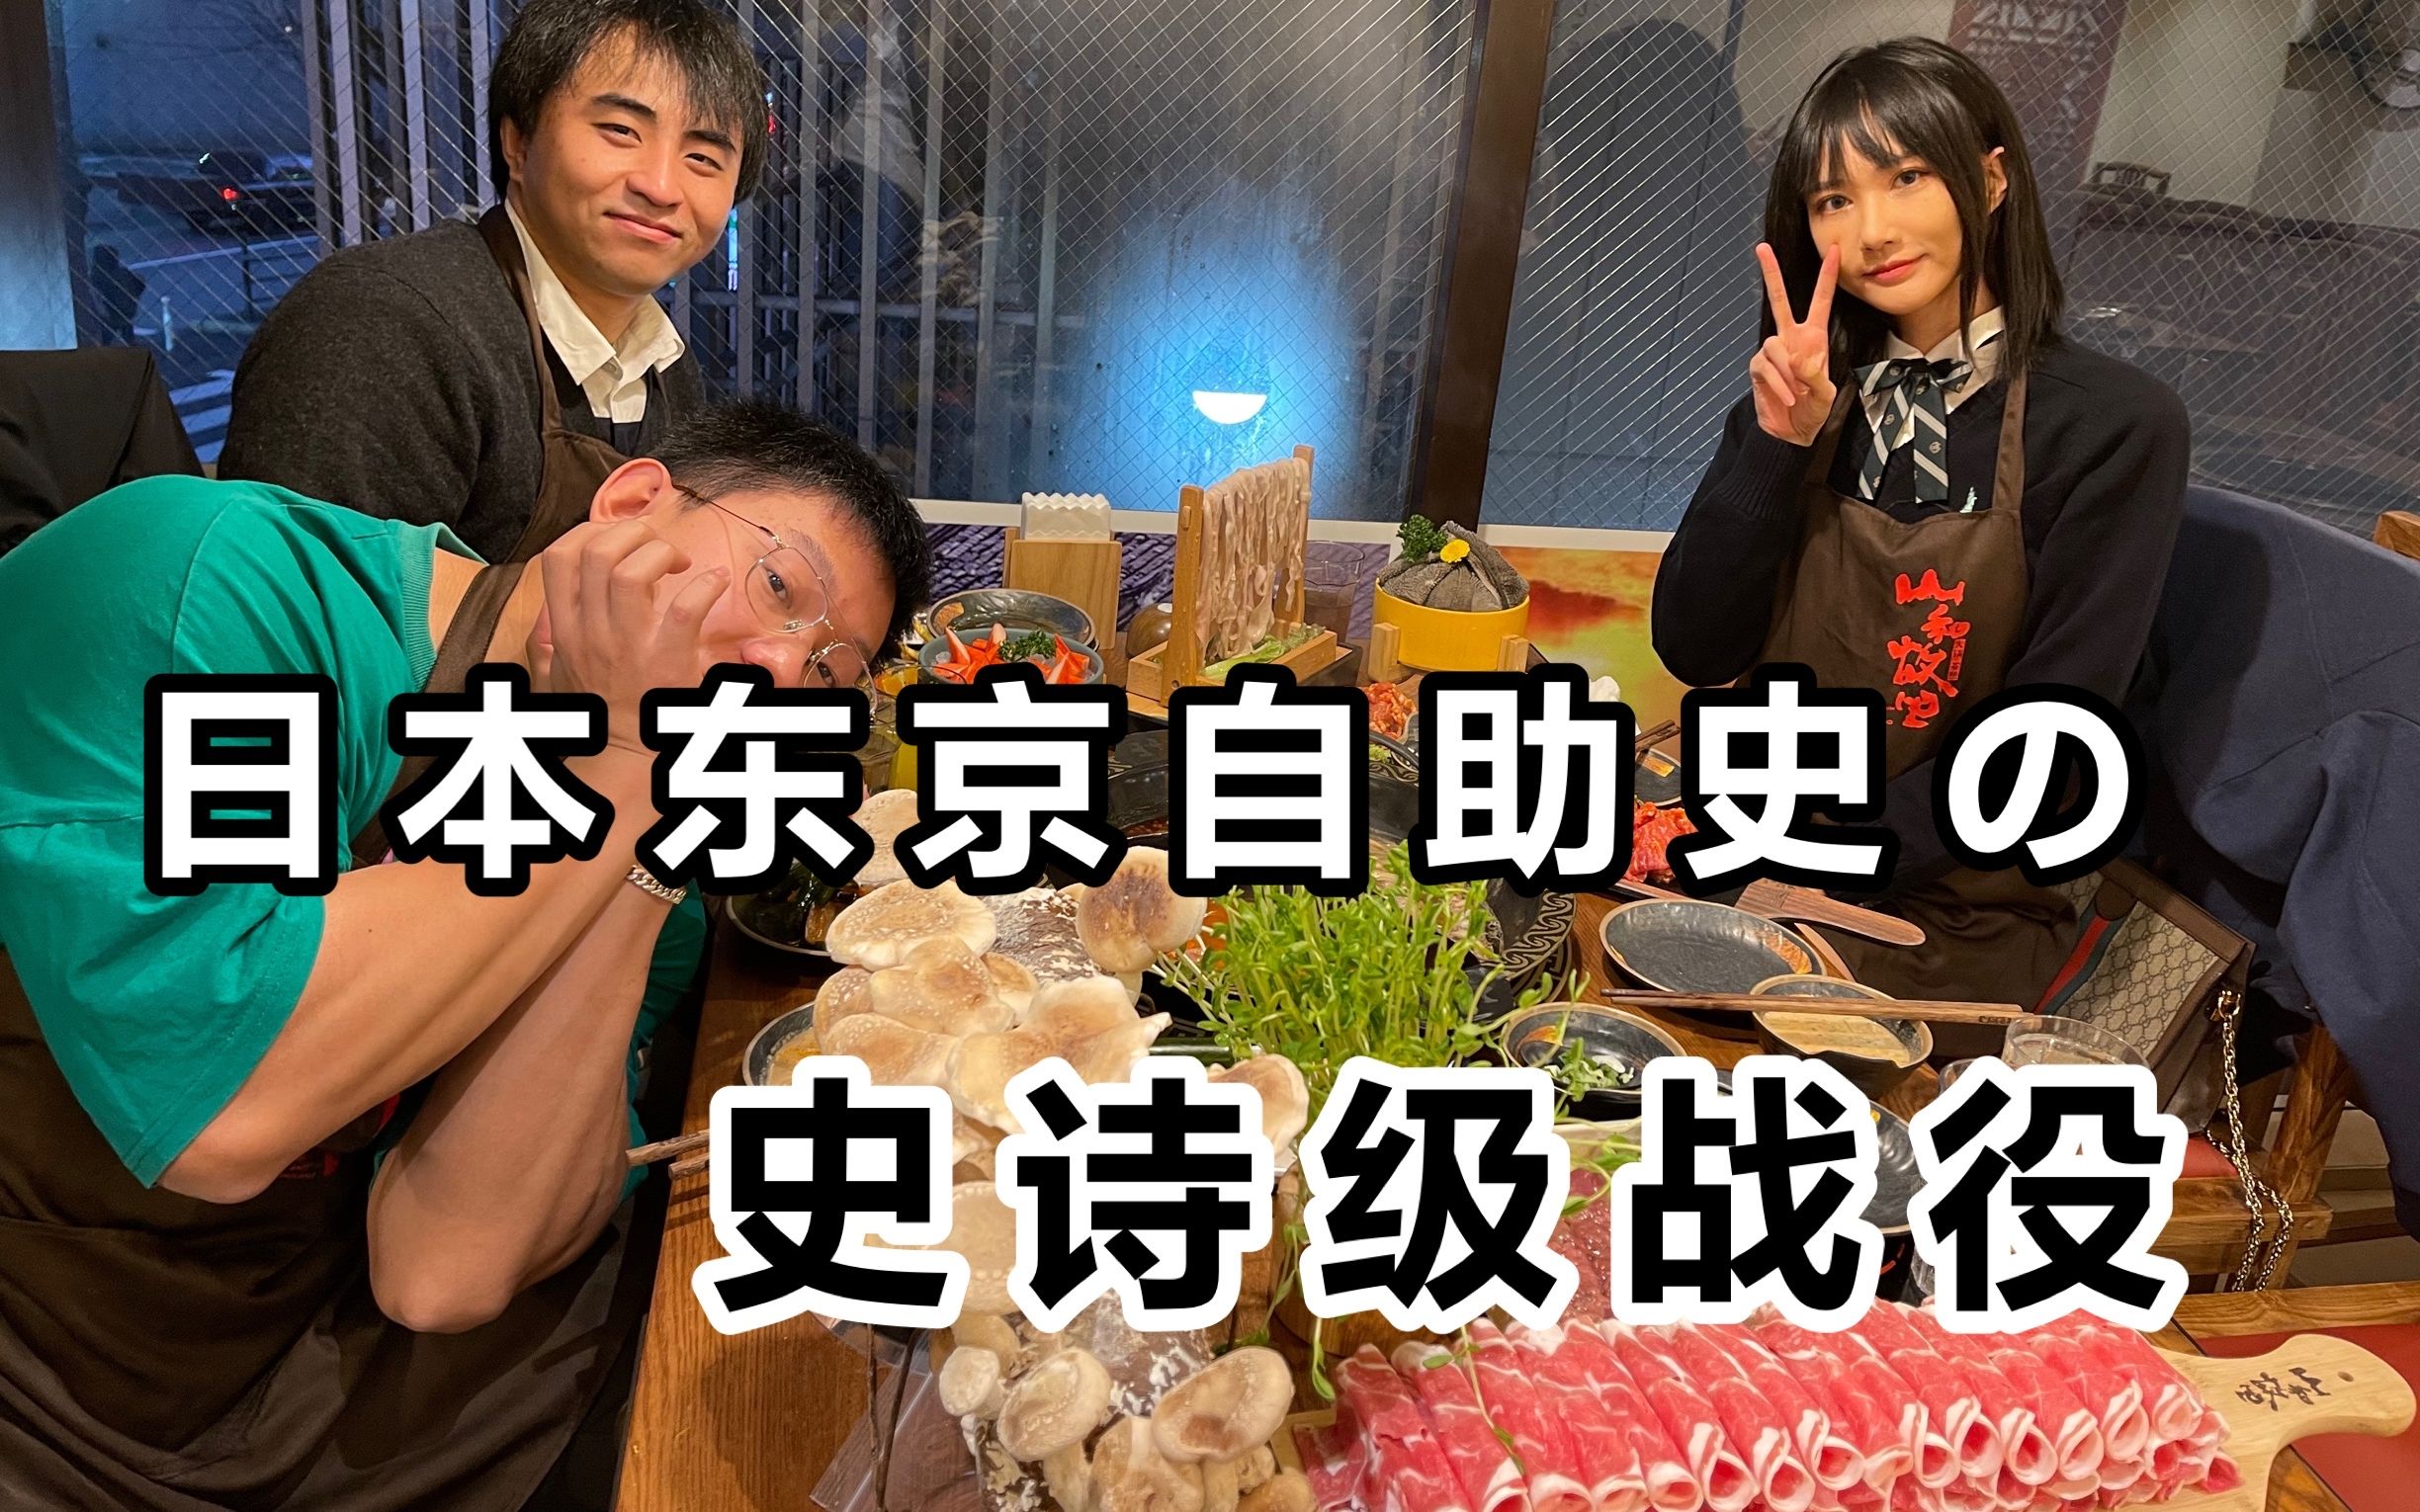 终于等到这一天！4个留学生在日本吃火锅自助竟然被老板免了单！